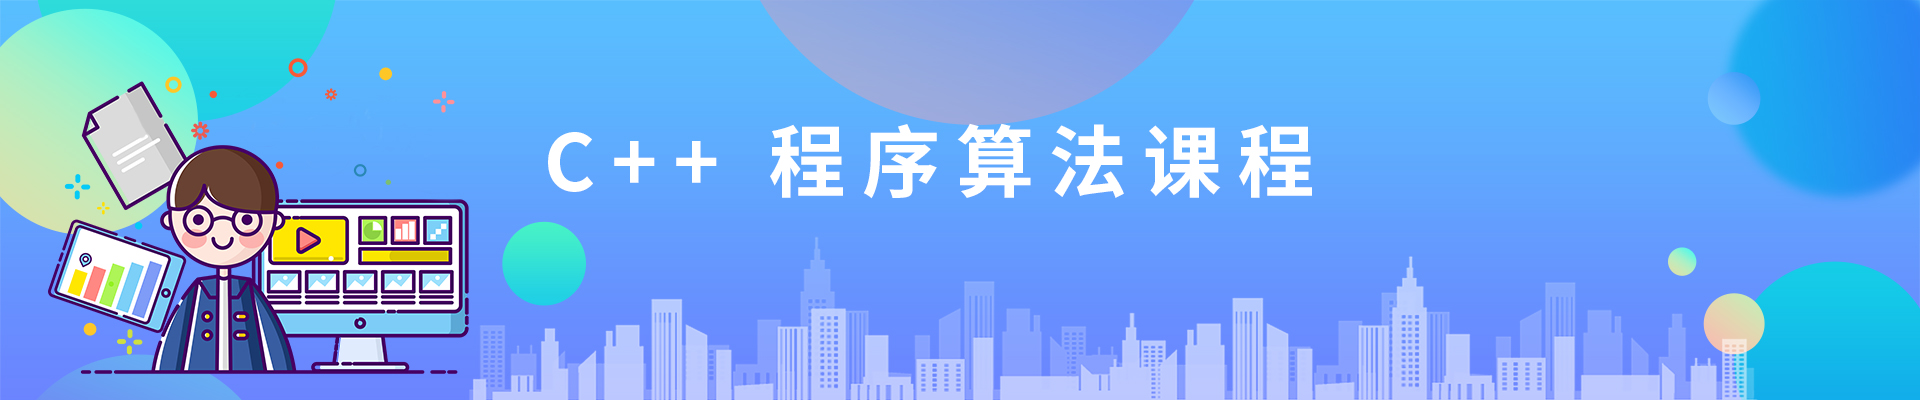 宁波广博国贸中心小码王少儿编程培训机构